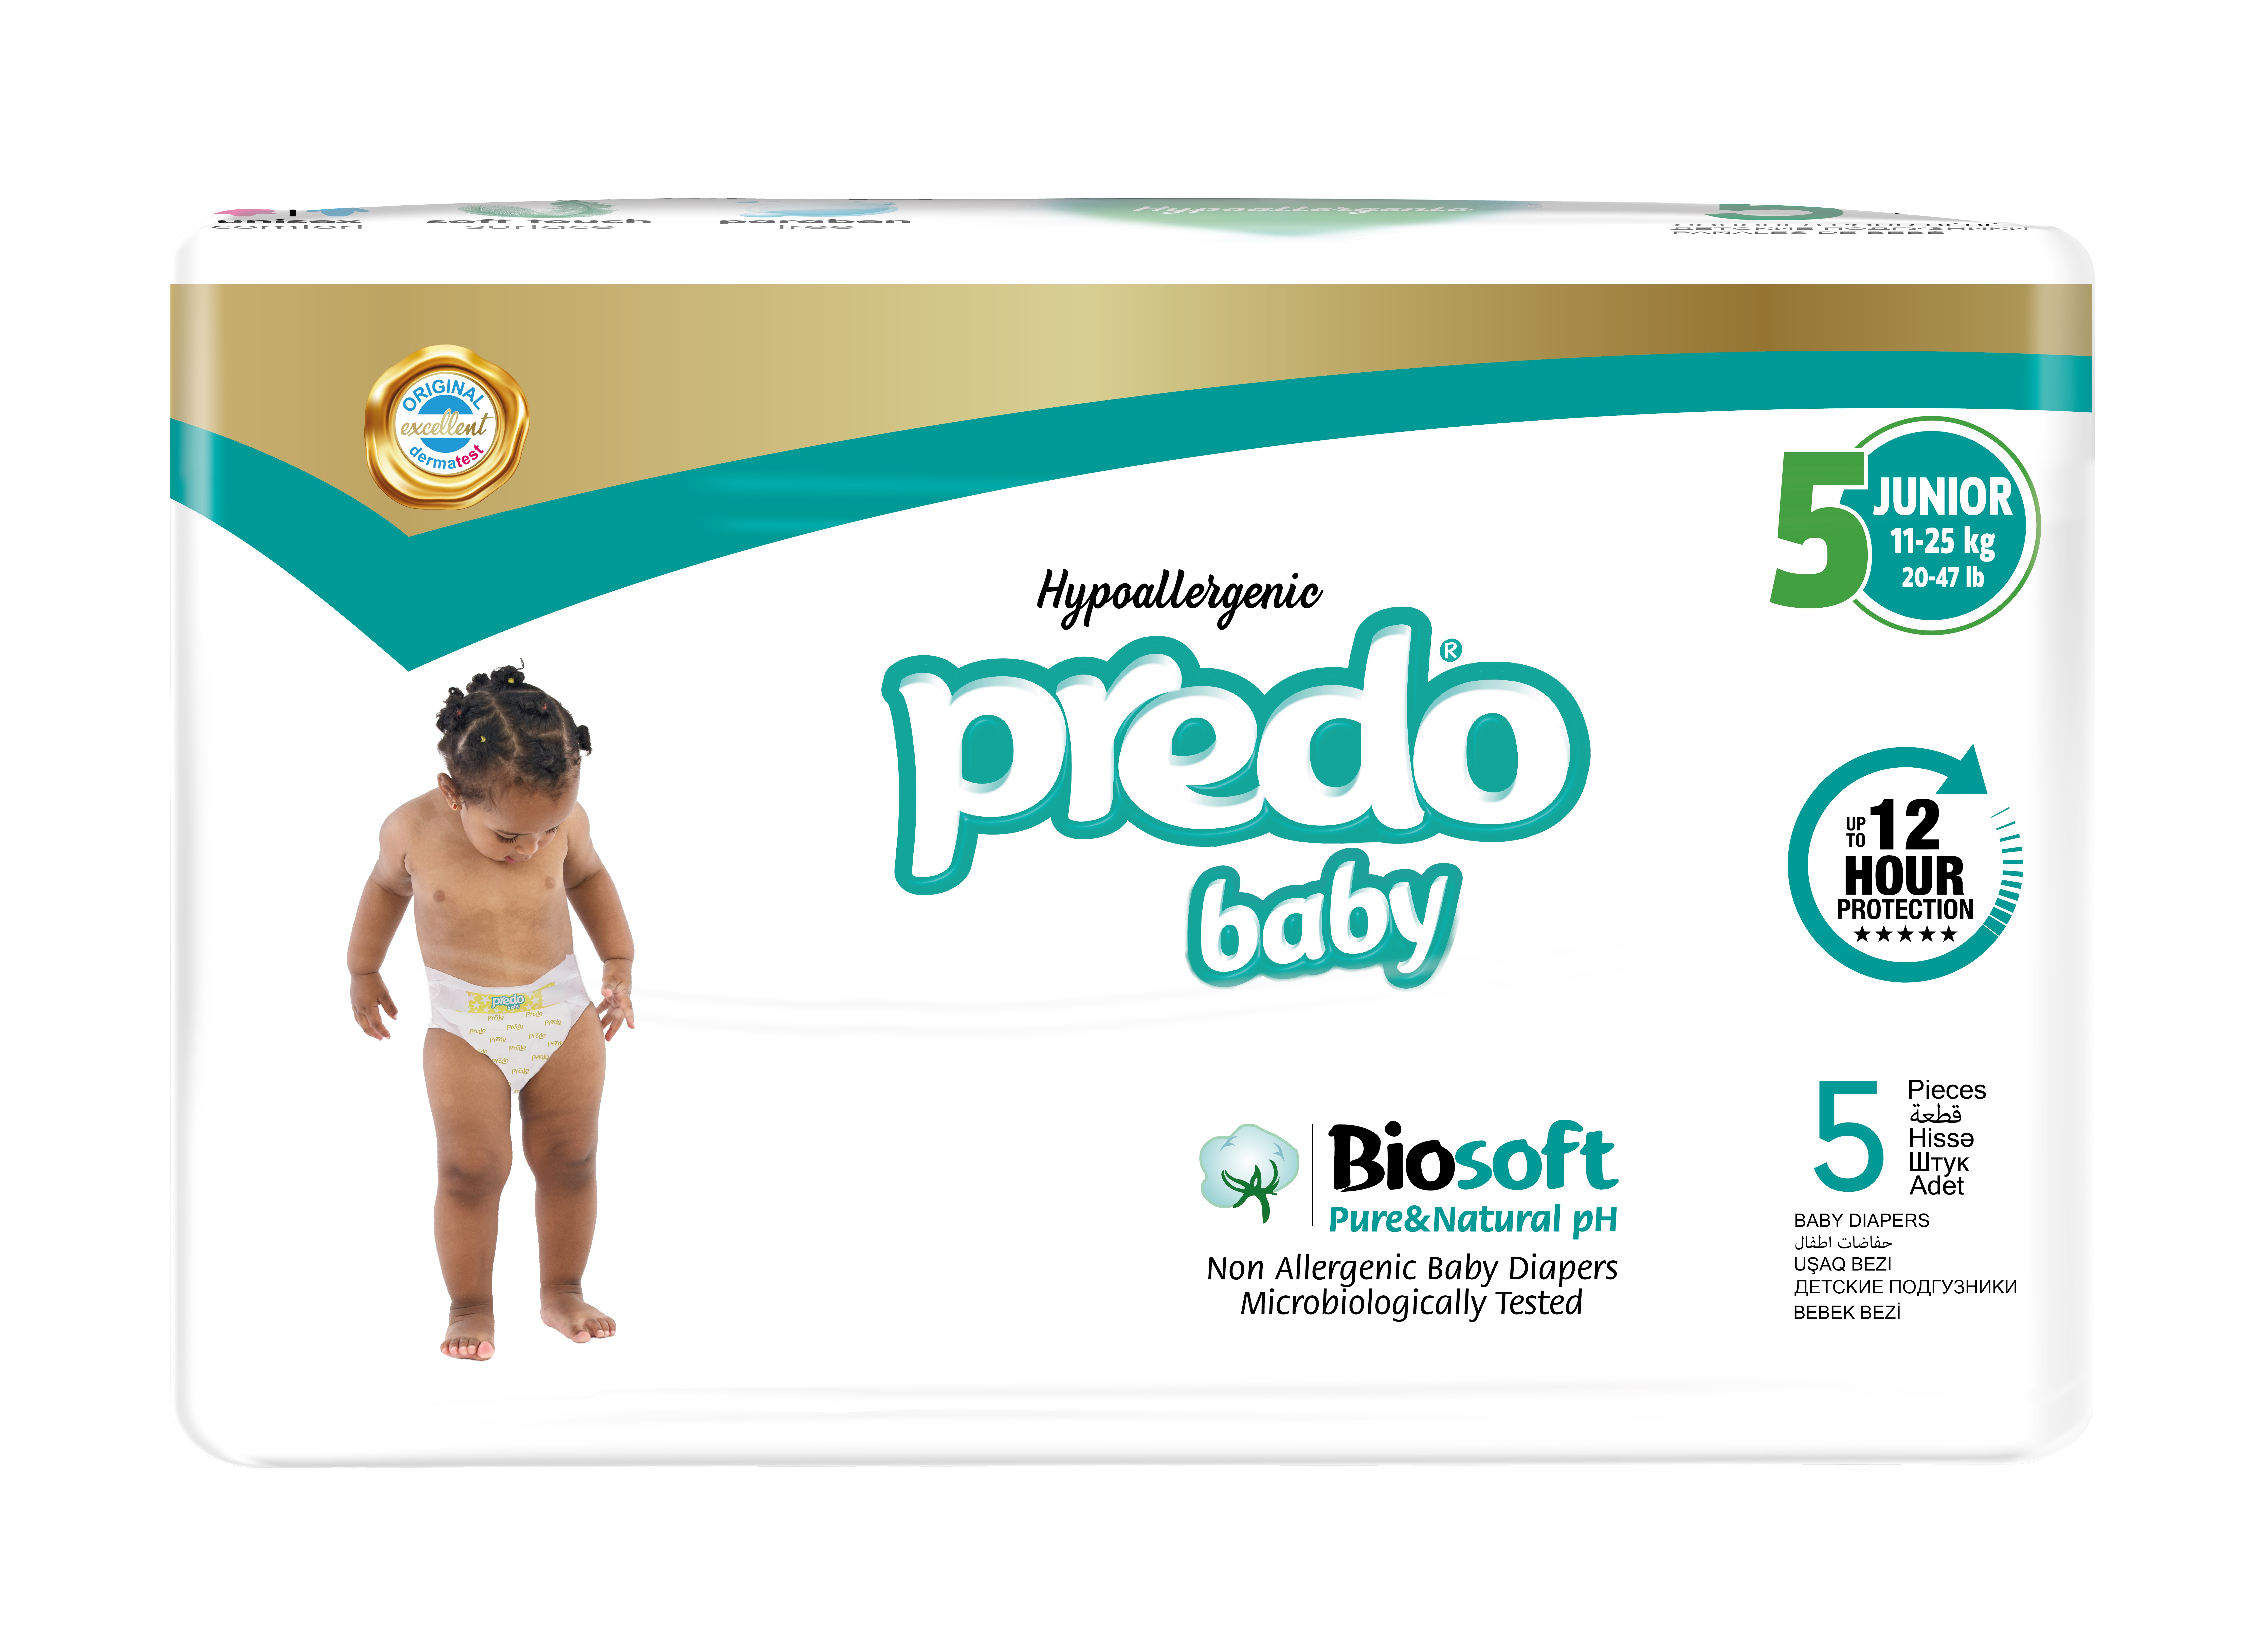 Подгузники Predo Baby 5 Junior (11-25кг), 5шт пазл maxi baby toys тройные что получится 3эл